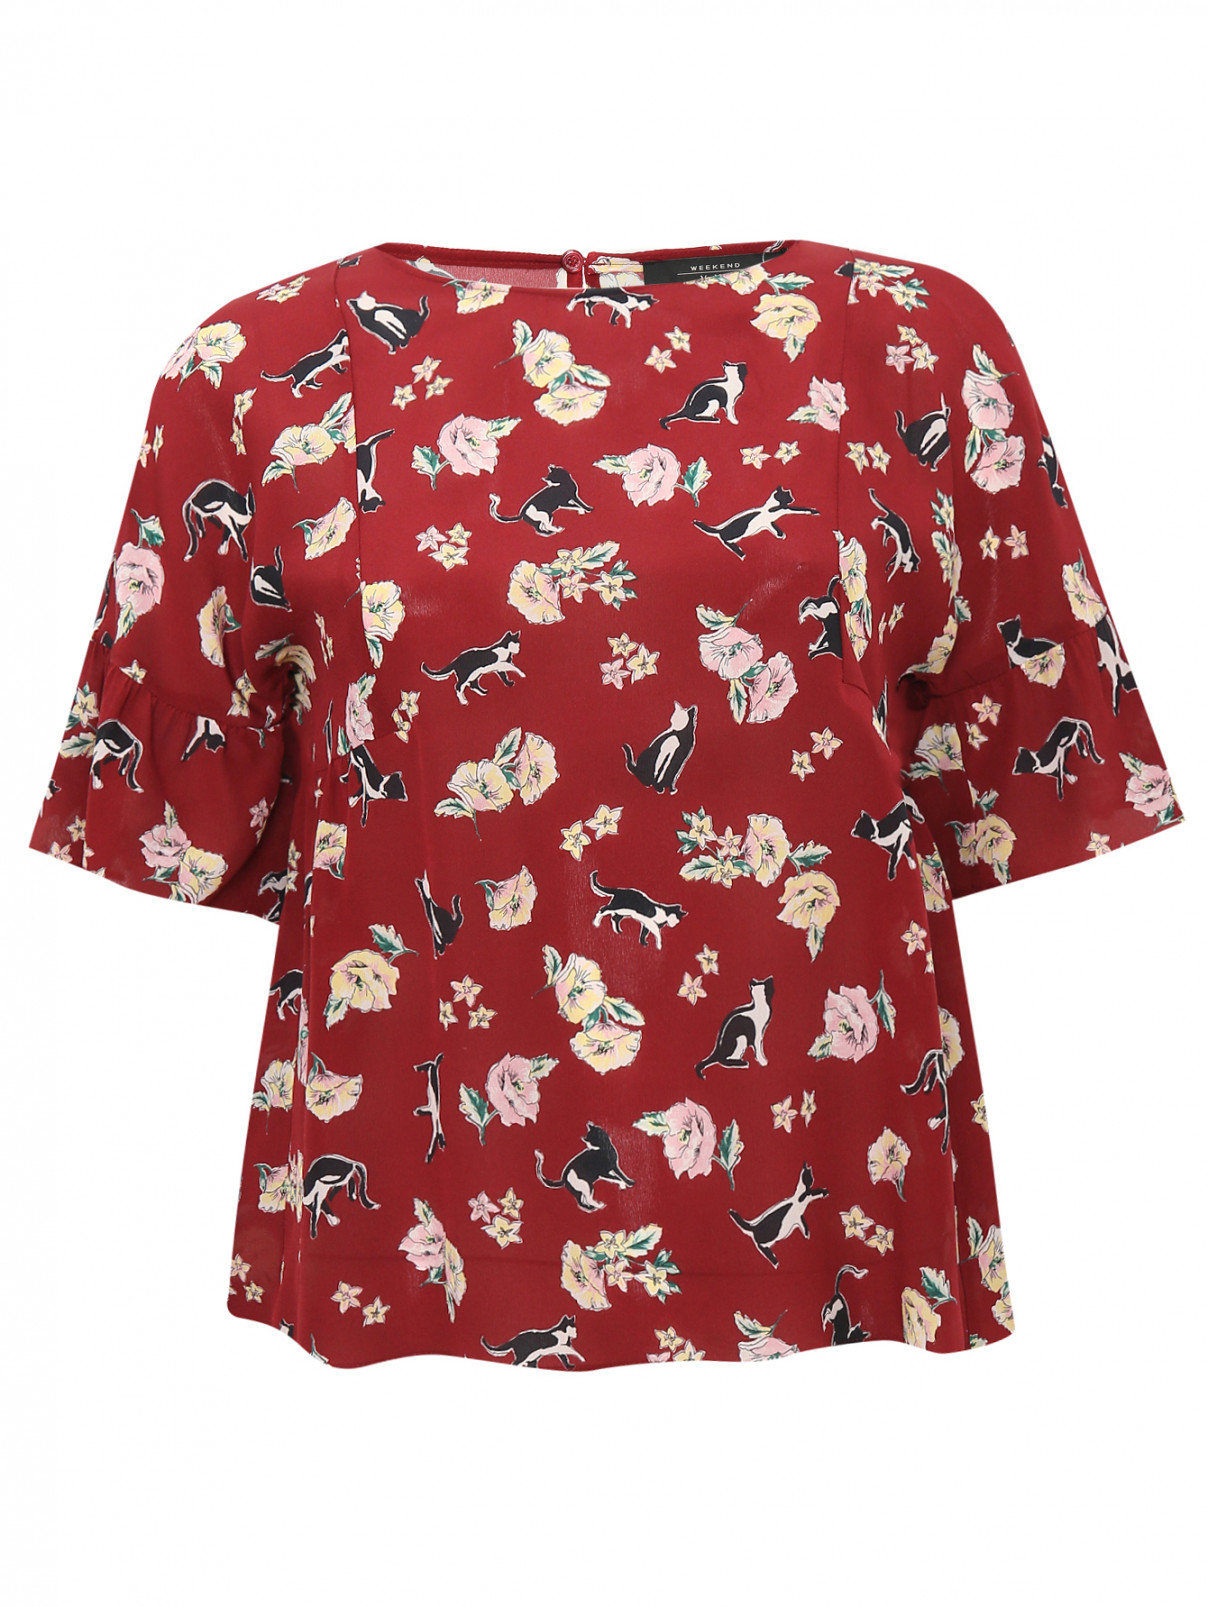 Блуза из шелка с принтом Weekend Max Mara  –  Общий вид  – Цвет:  Красный